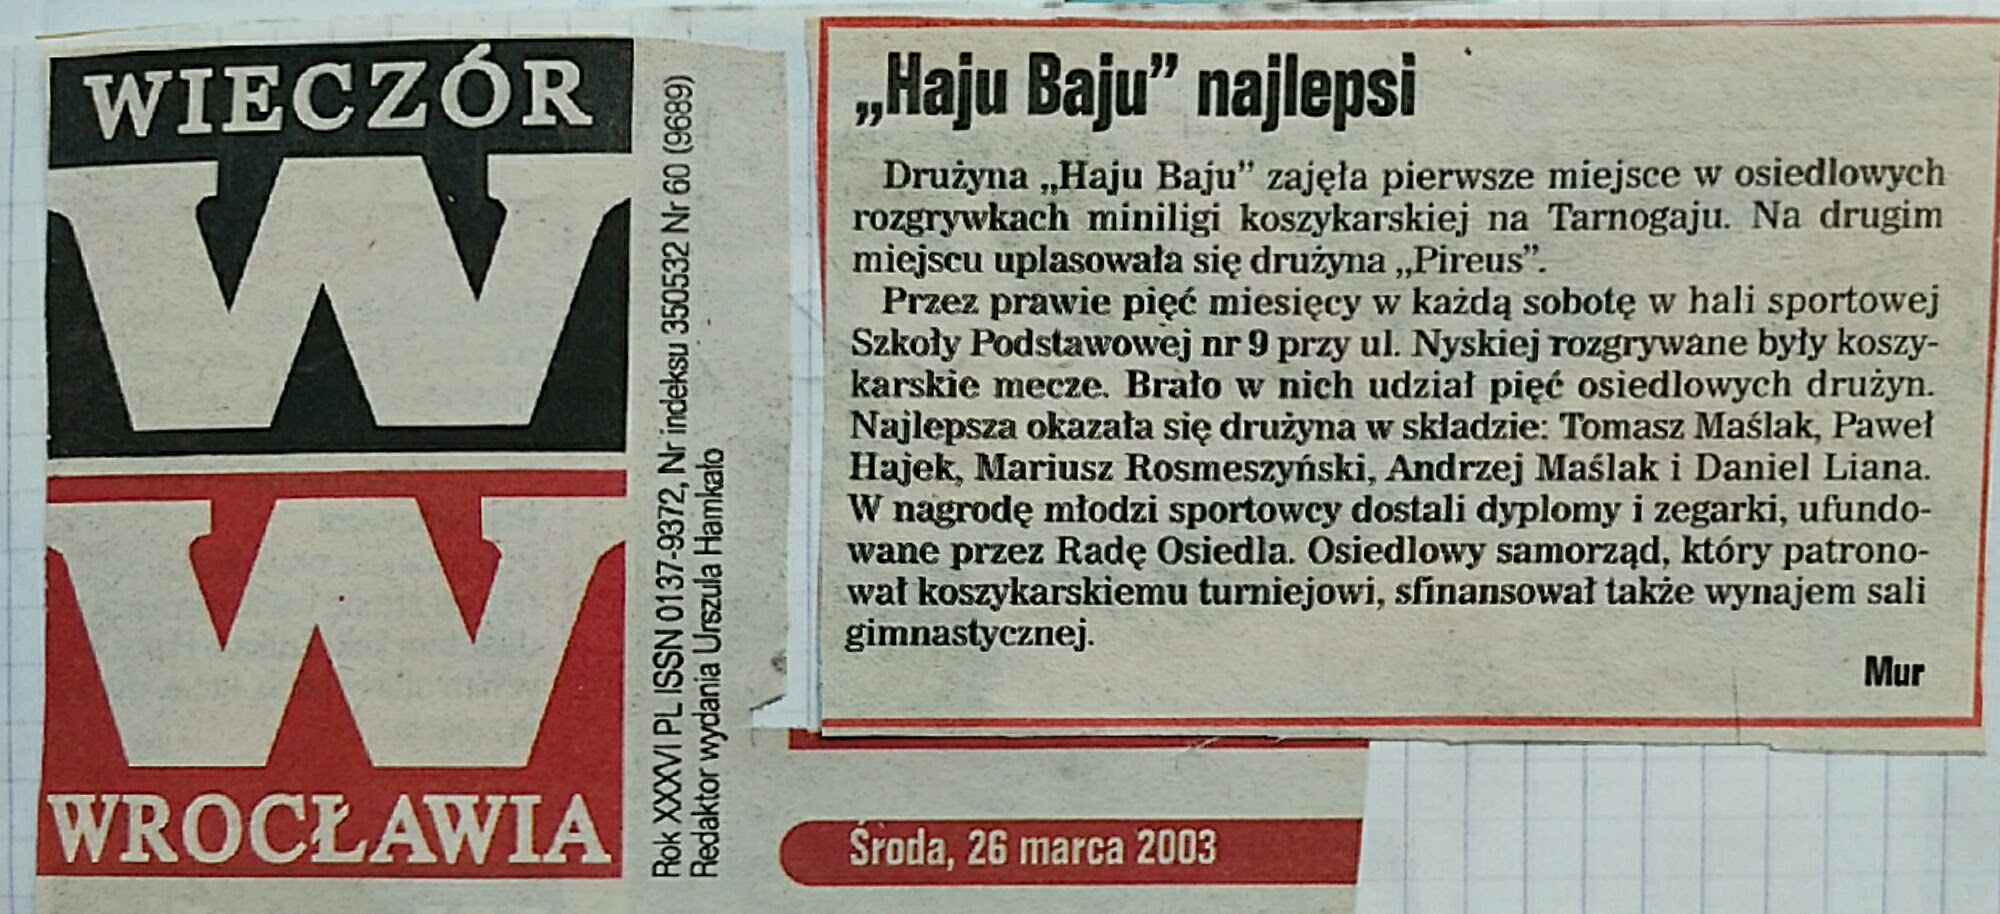 3 26 marca 2003 Wieczór Wrocławia